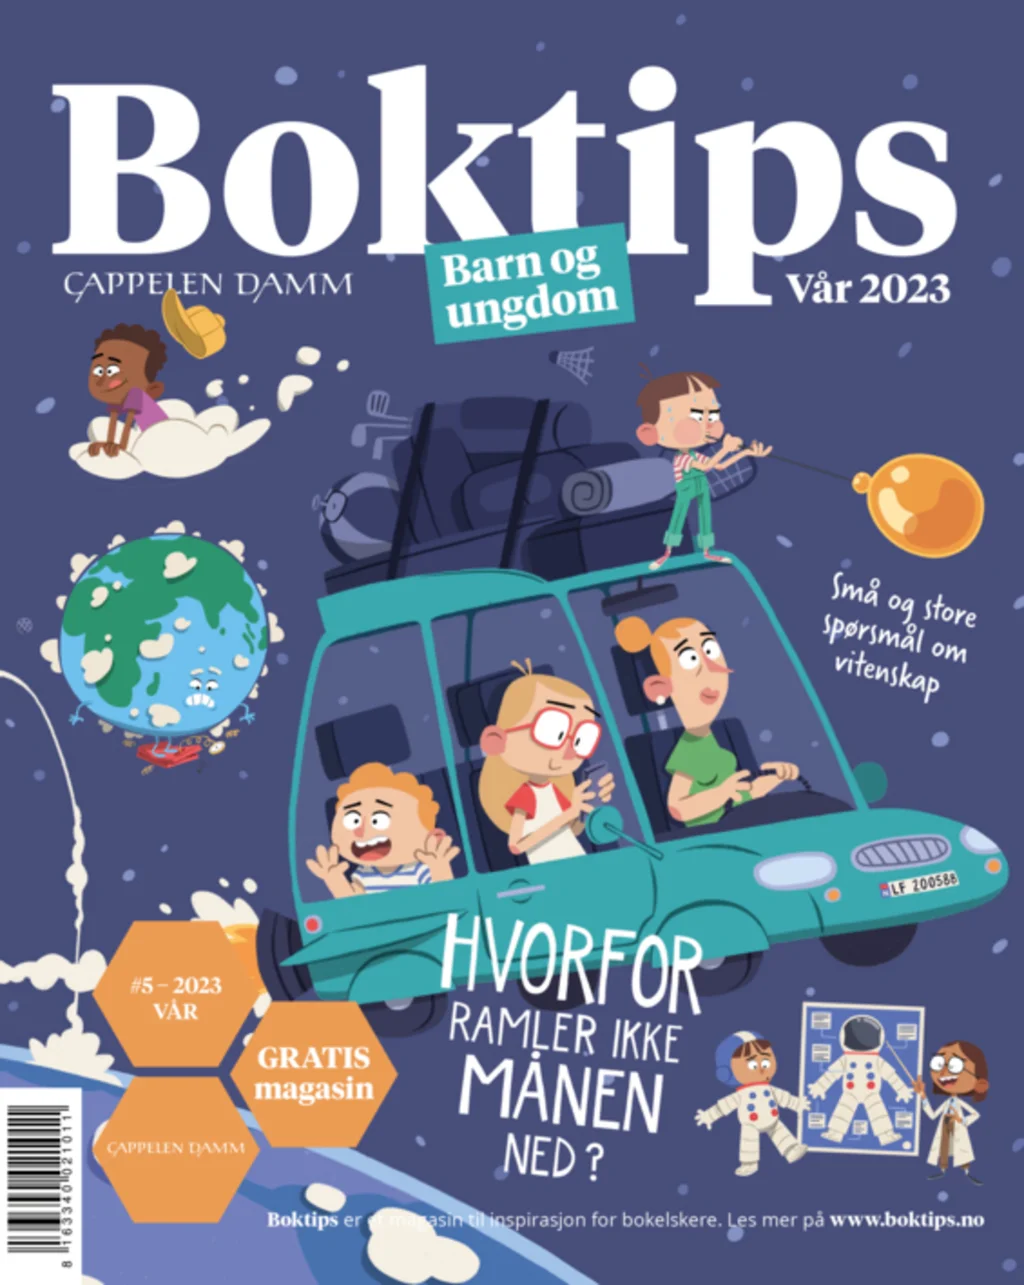 BOKTIPS magasinet - Barn og ungdom #5 - VÅR2023